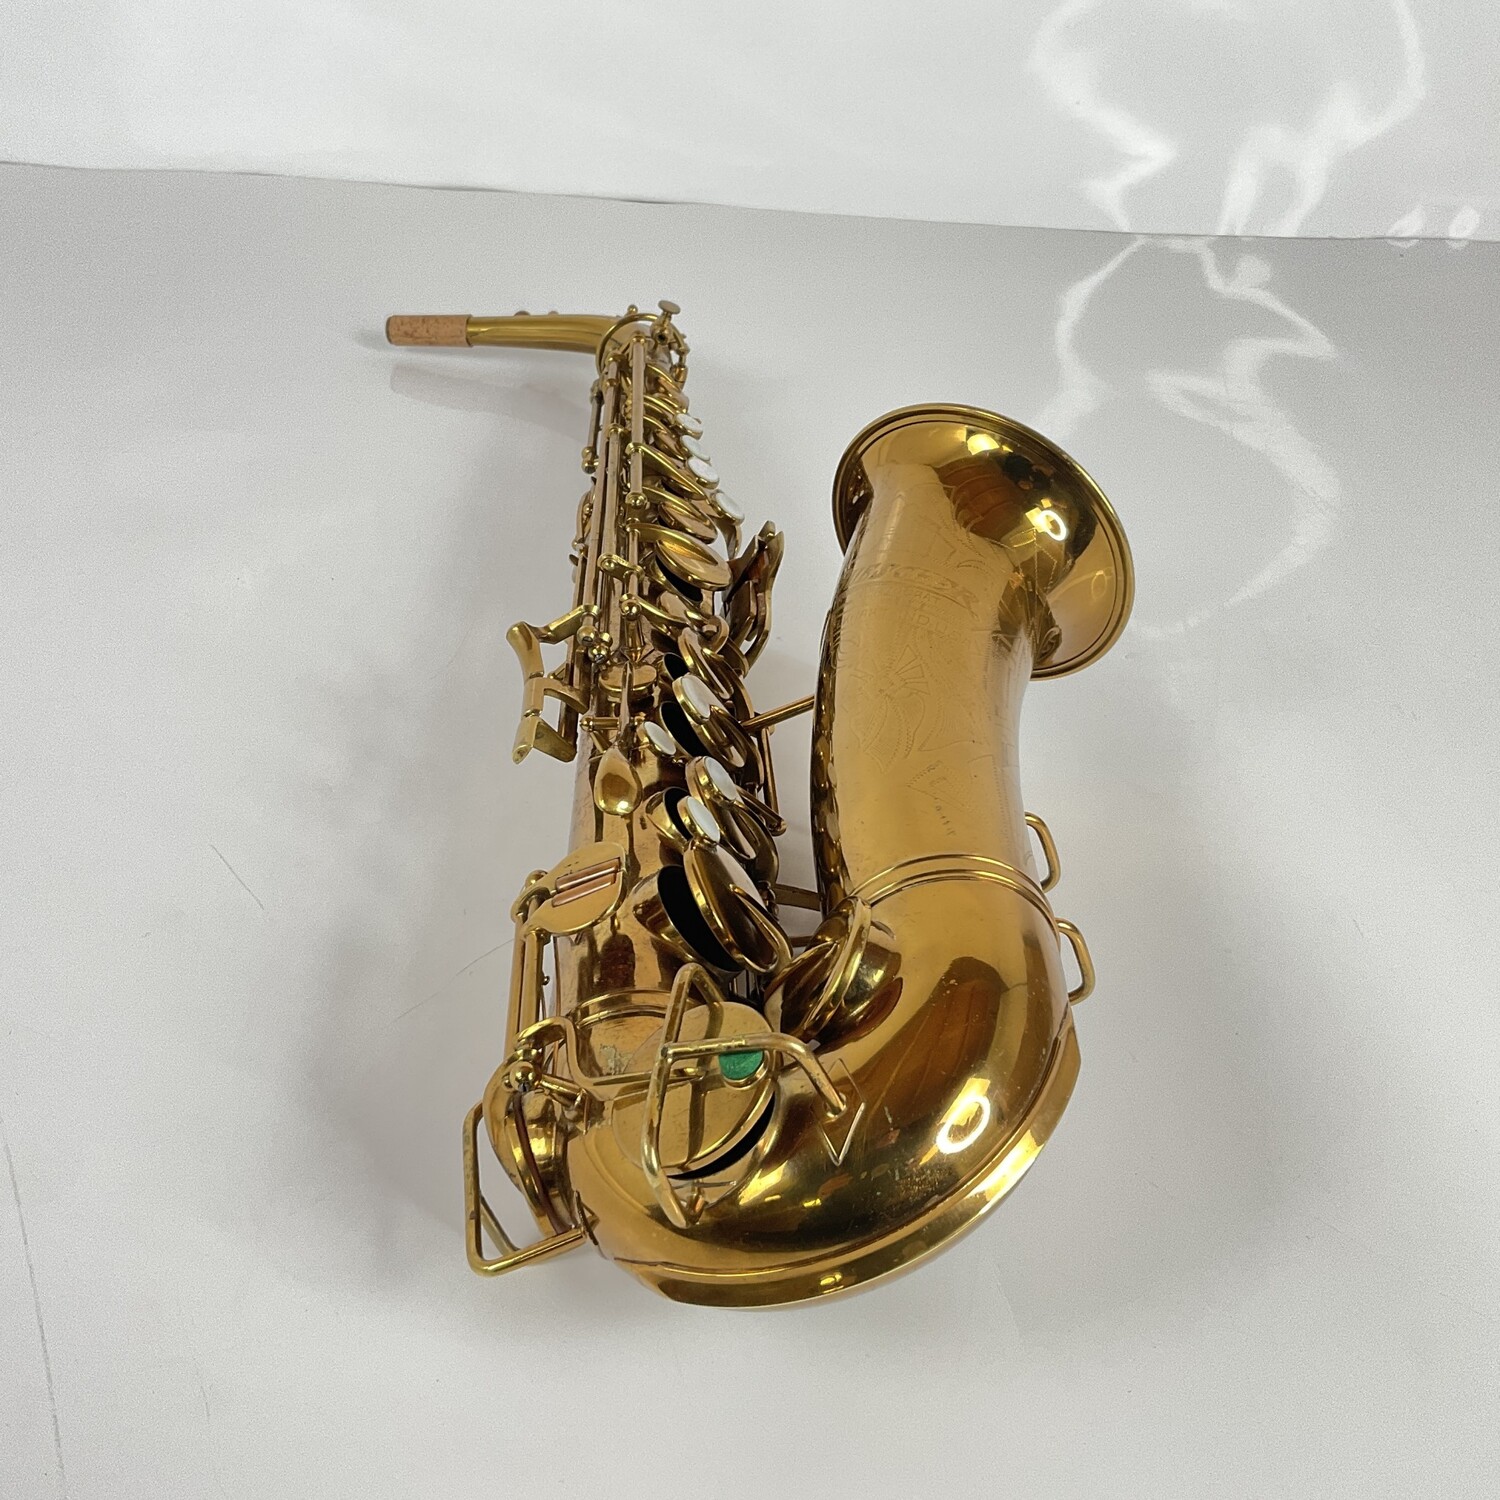 Buescher Used Buescher Art Deco Aristocrat Eb Alto Saxophone (SN: 287060)